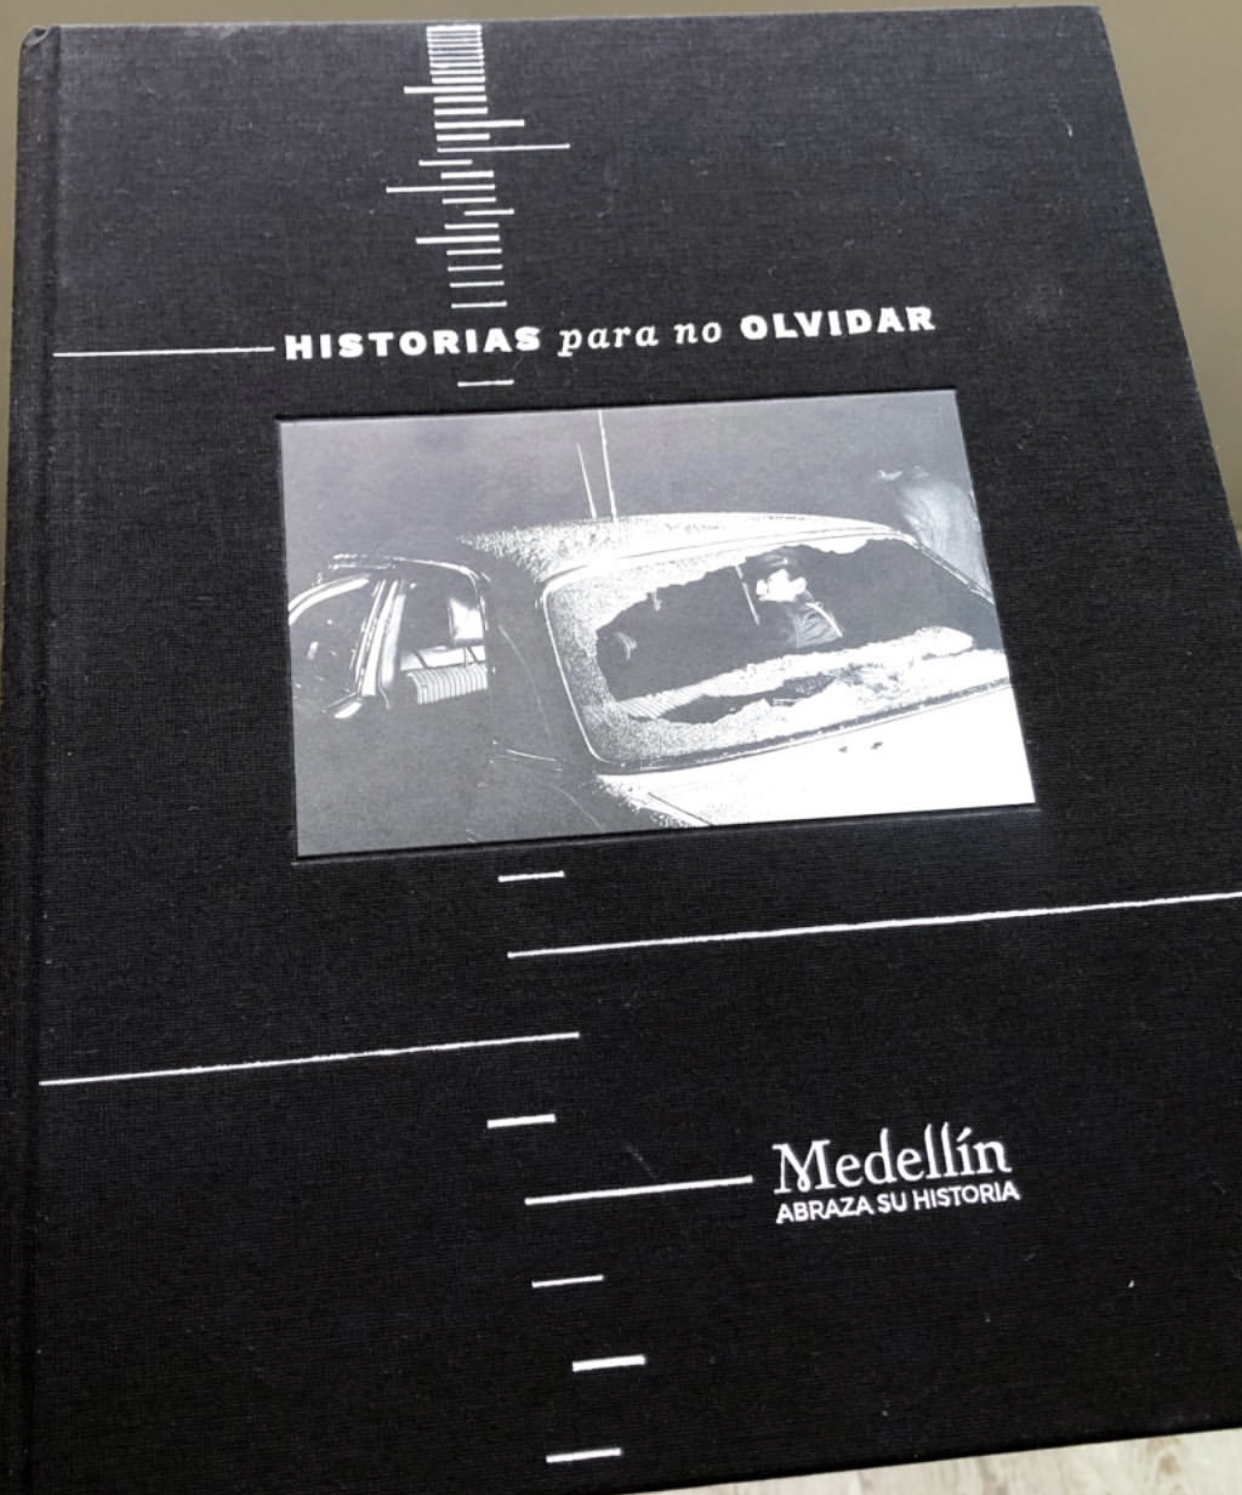 Medellín abraza su historia